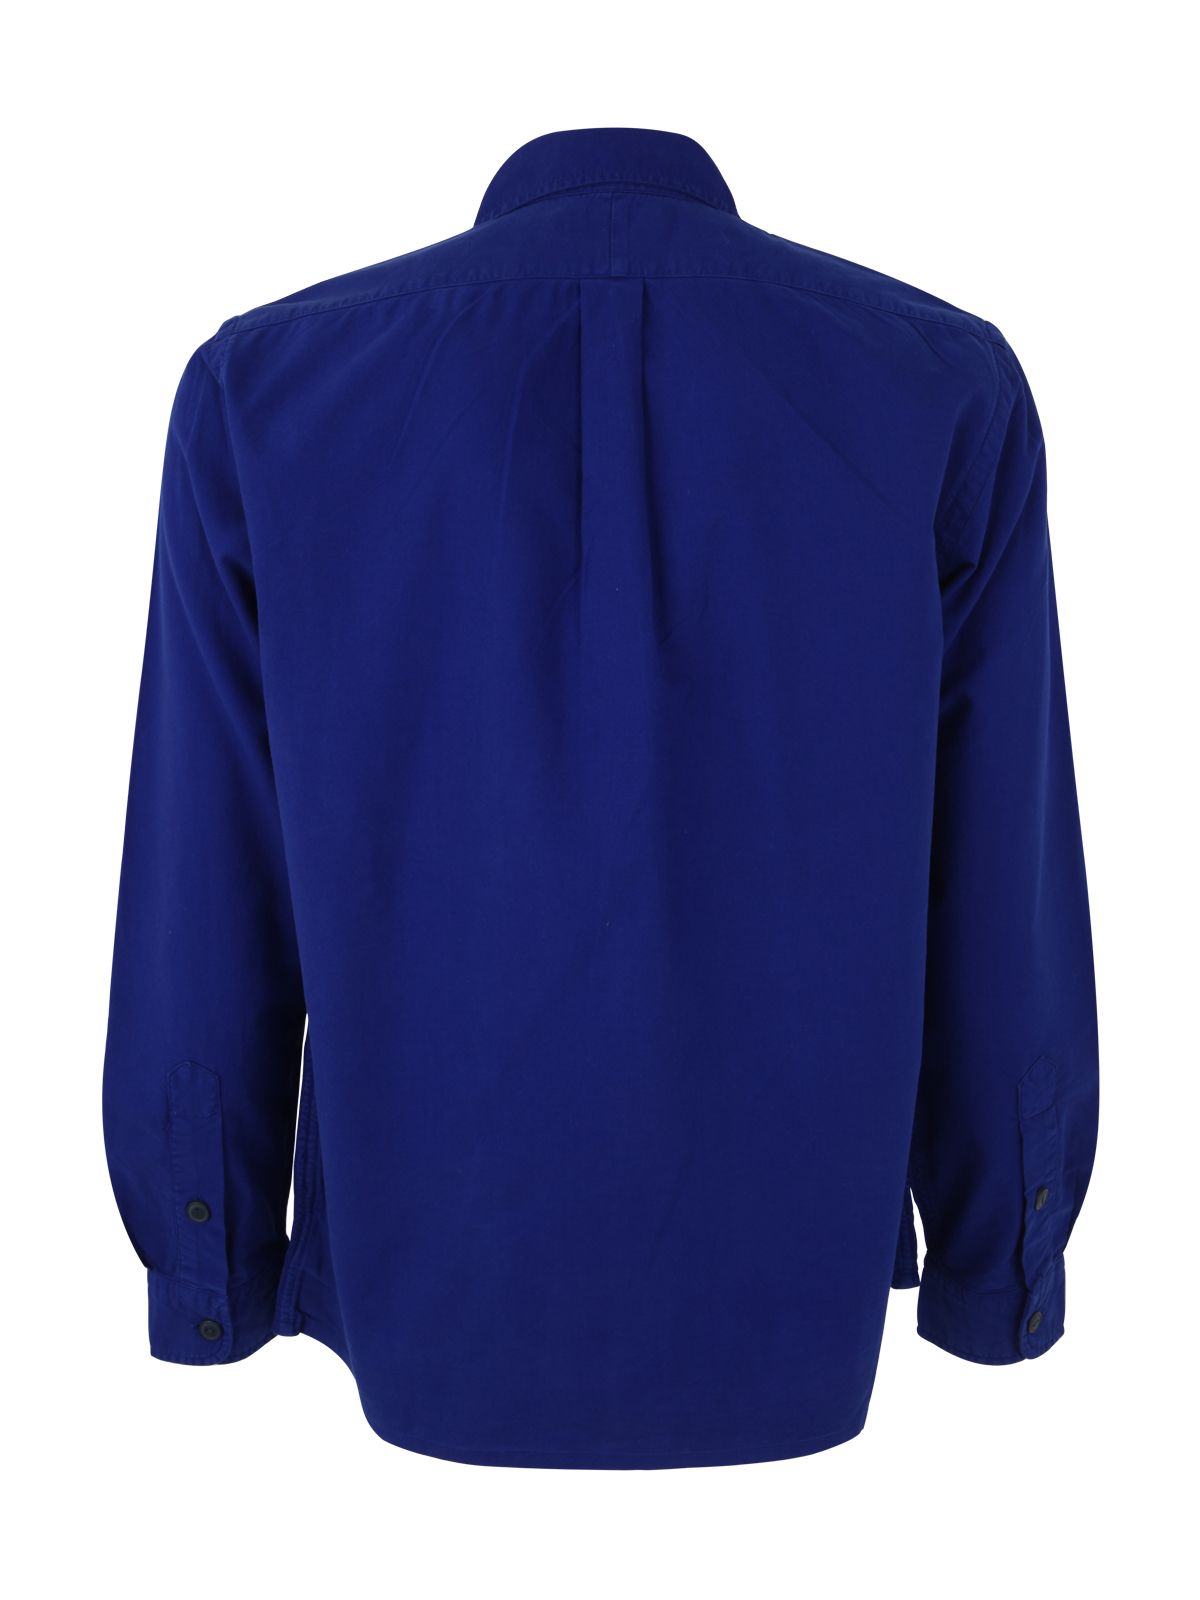 Shop Polo Ralph Lauren Men's Long Sleeve Sport Shirt